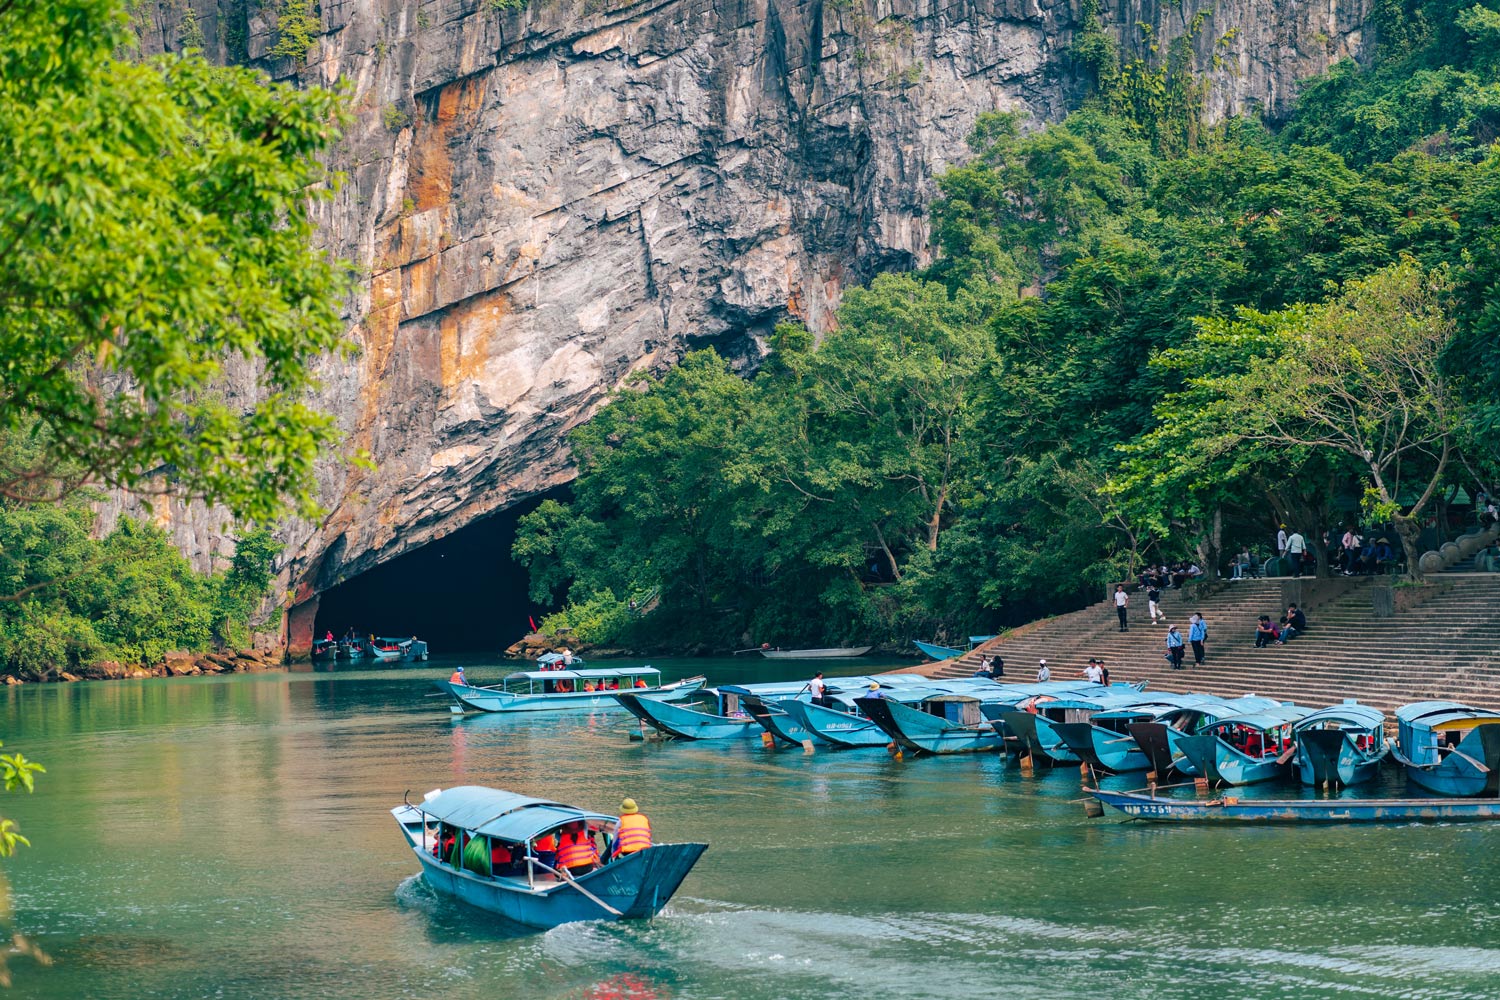 Phong Nha Cave in tourist season.